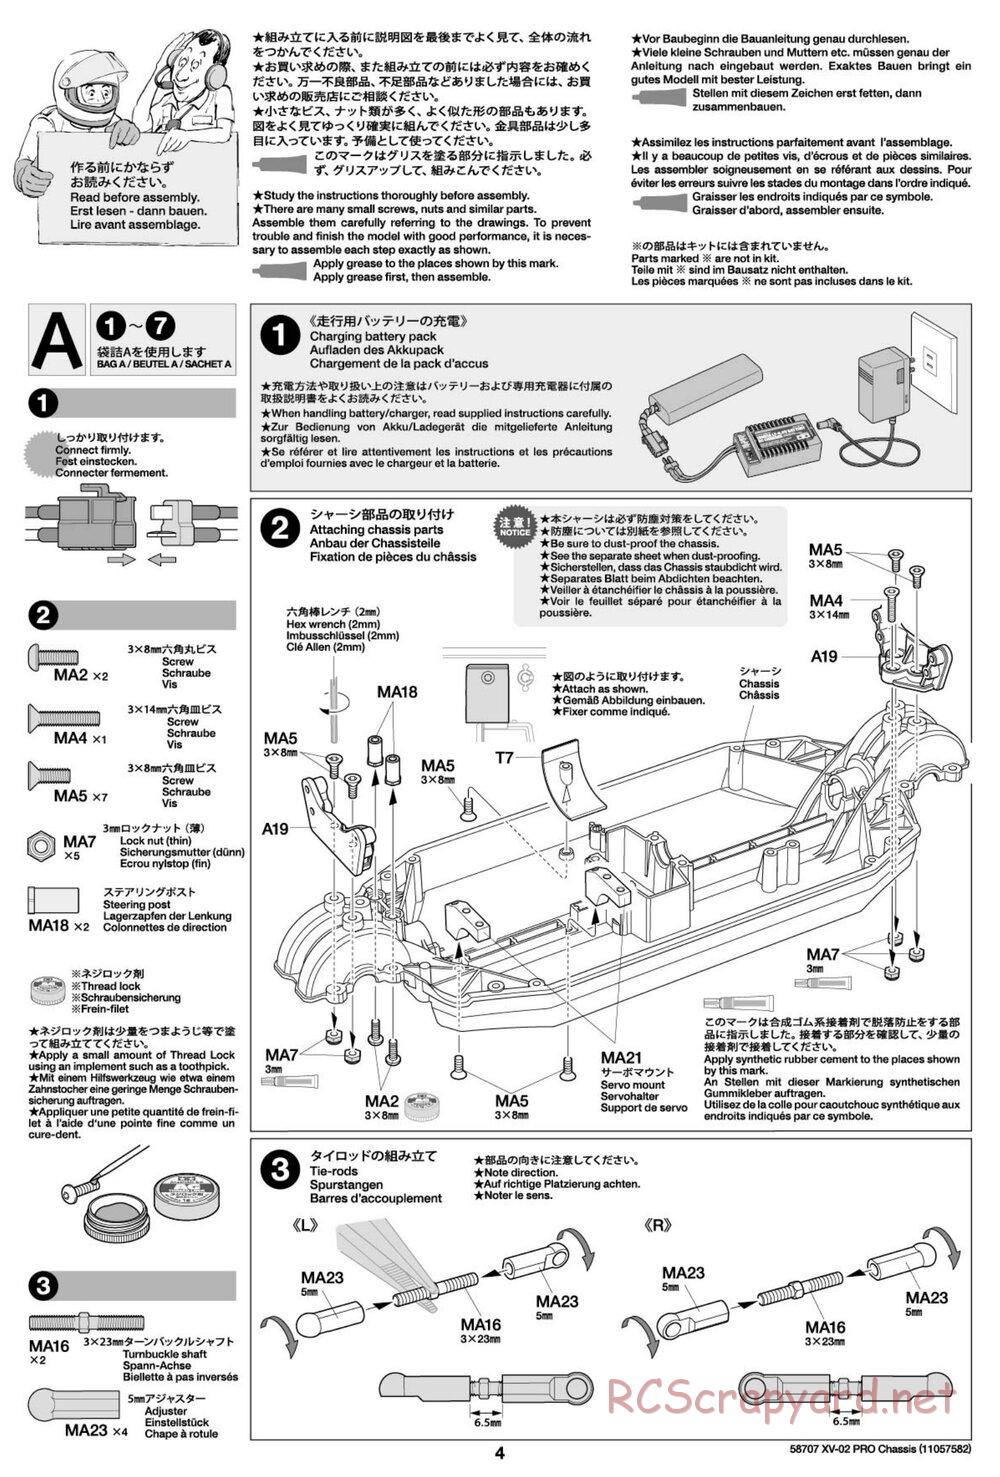 Tamiya - XV-02 Pro Chassis - Manual - Page 4